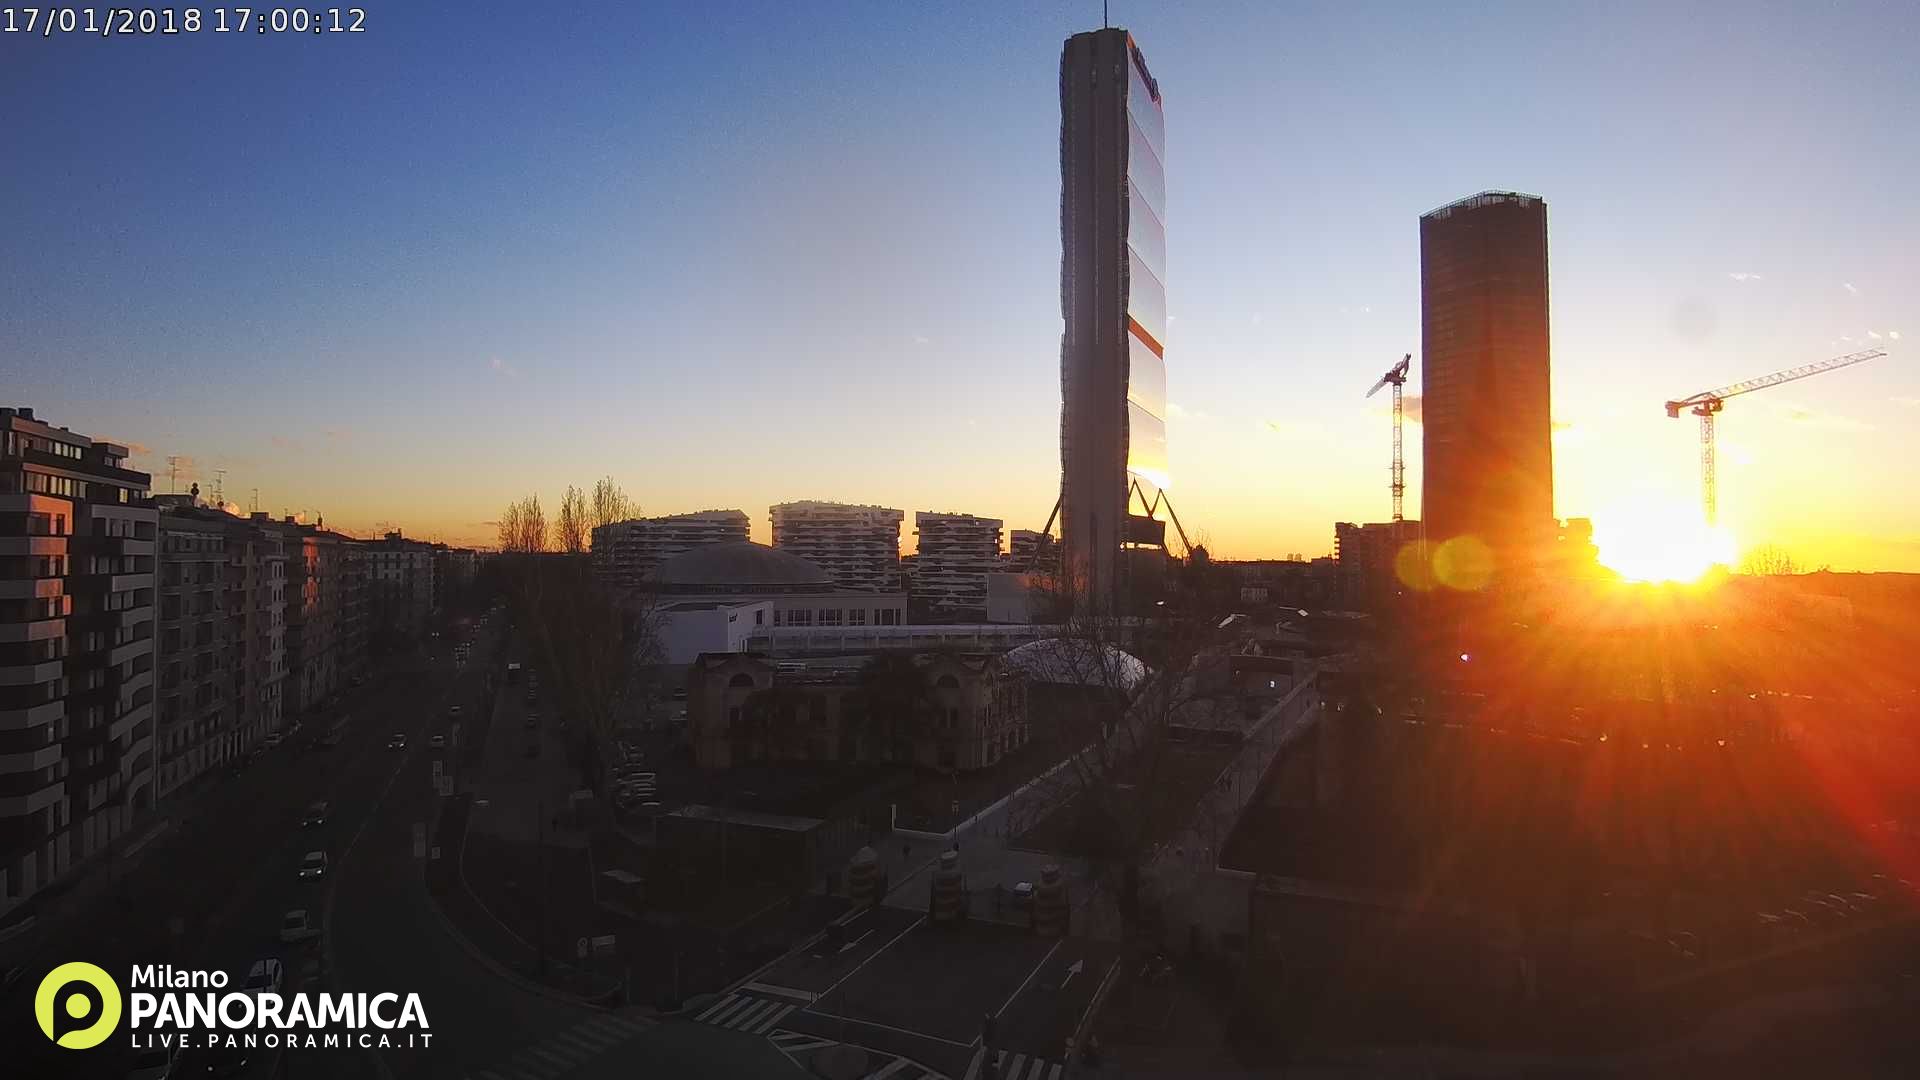 WebCam per Skyline città, paesaggi. Utilizza le Telecamere Foscam per vedere lo streaming video